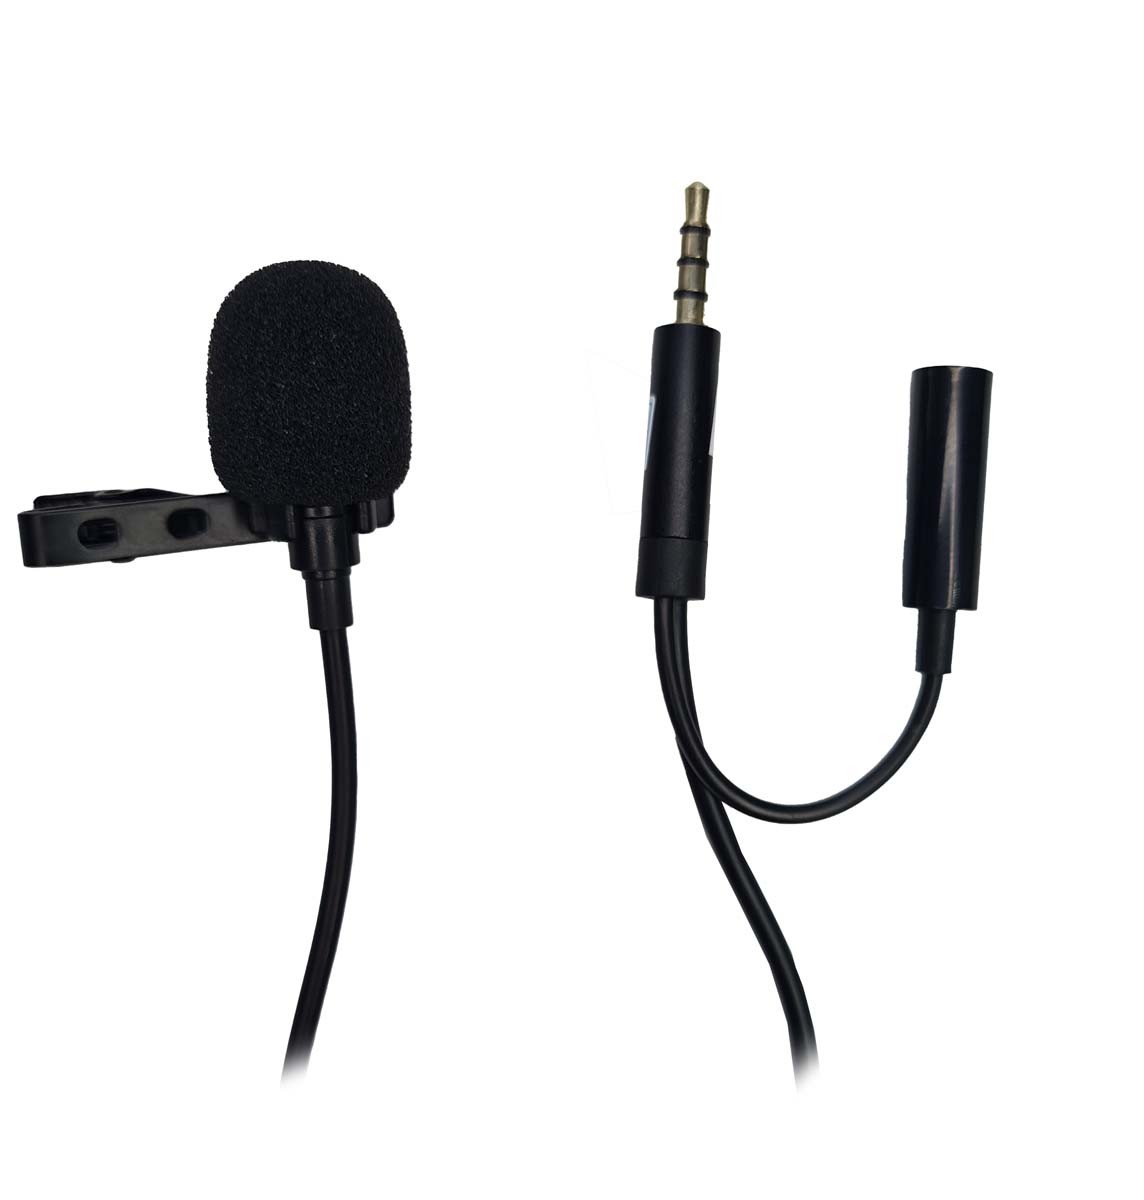 Microfone Condensador de Lapela para Celular com Adaptador para Fone